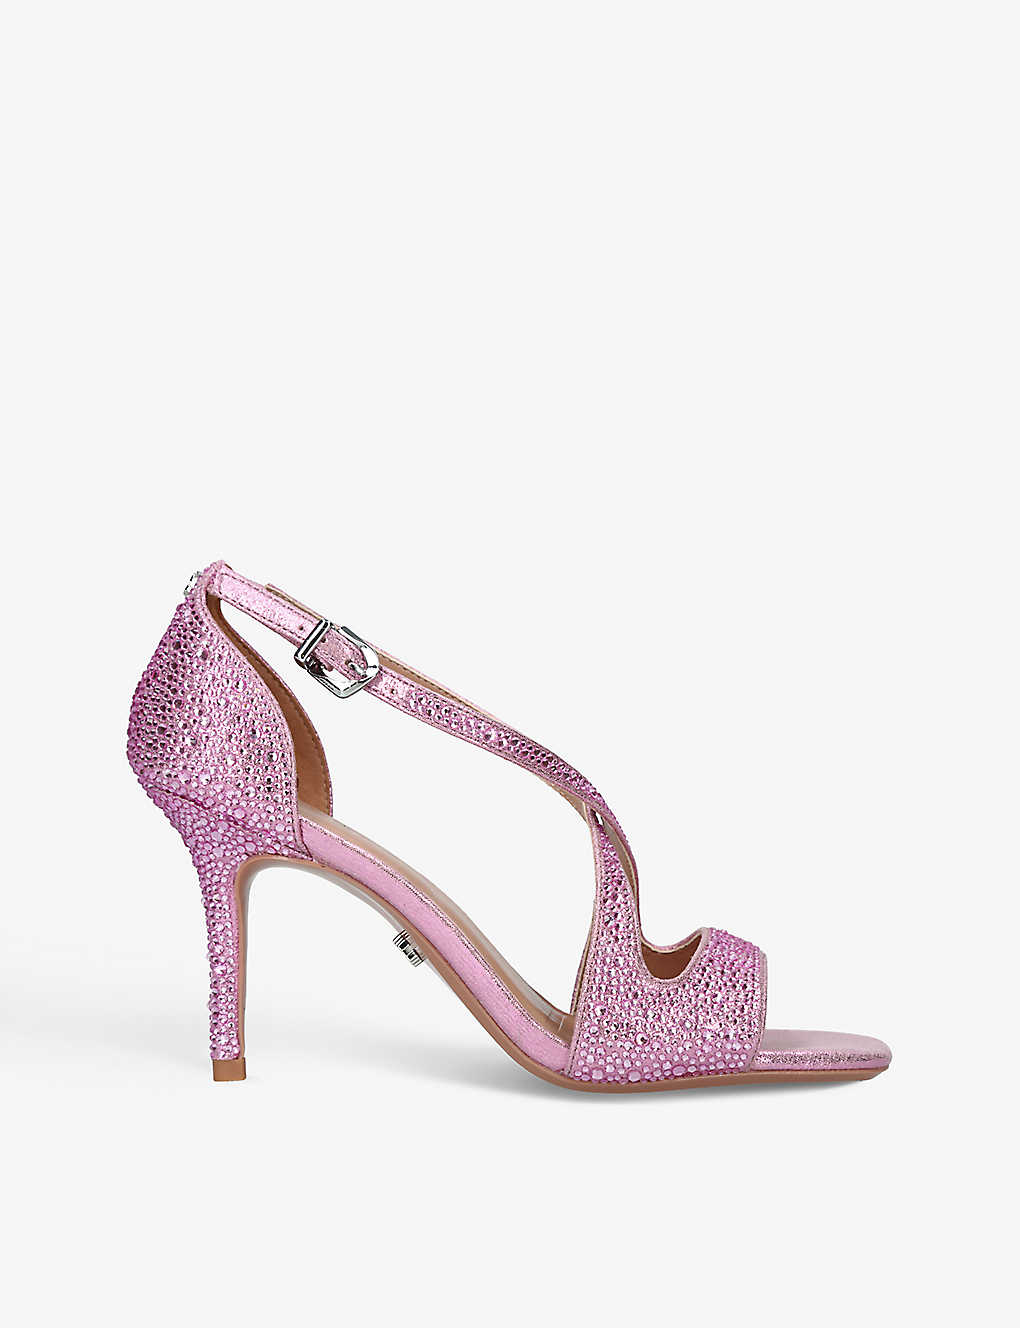 Carvela Womens Pink Symmetry Jewel-embellished Satin Heeled Sandals